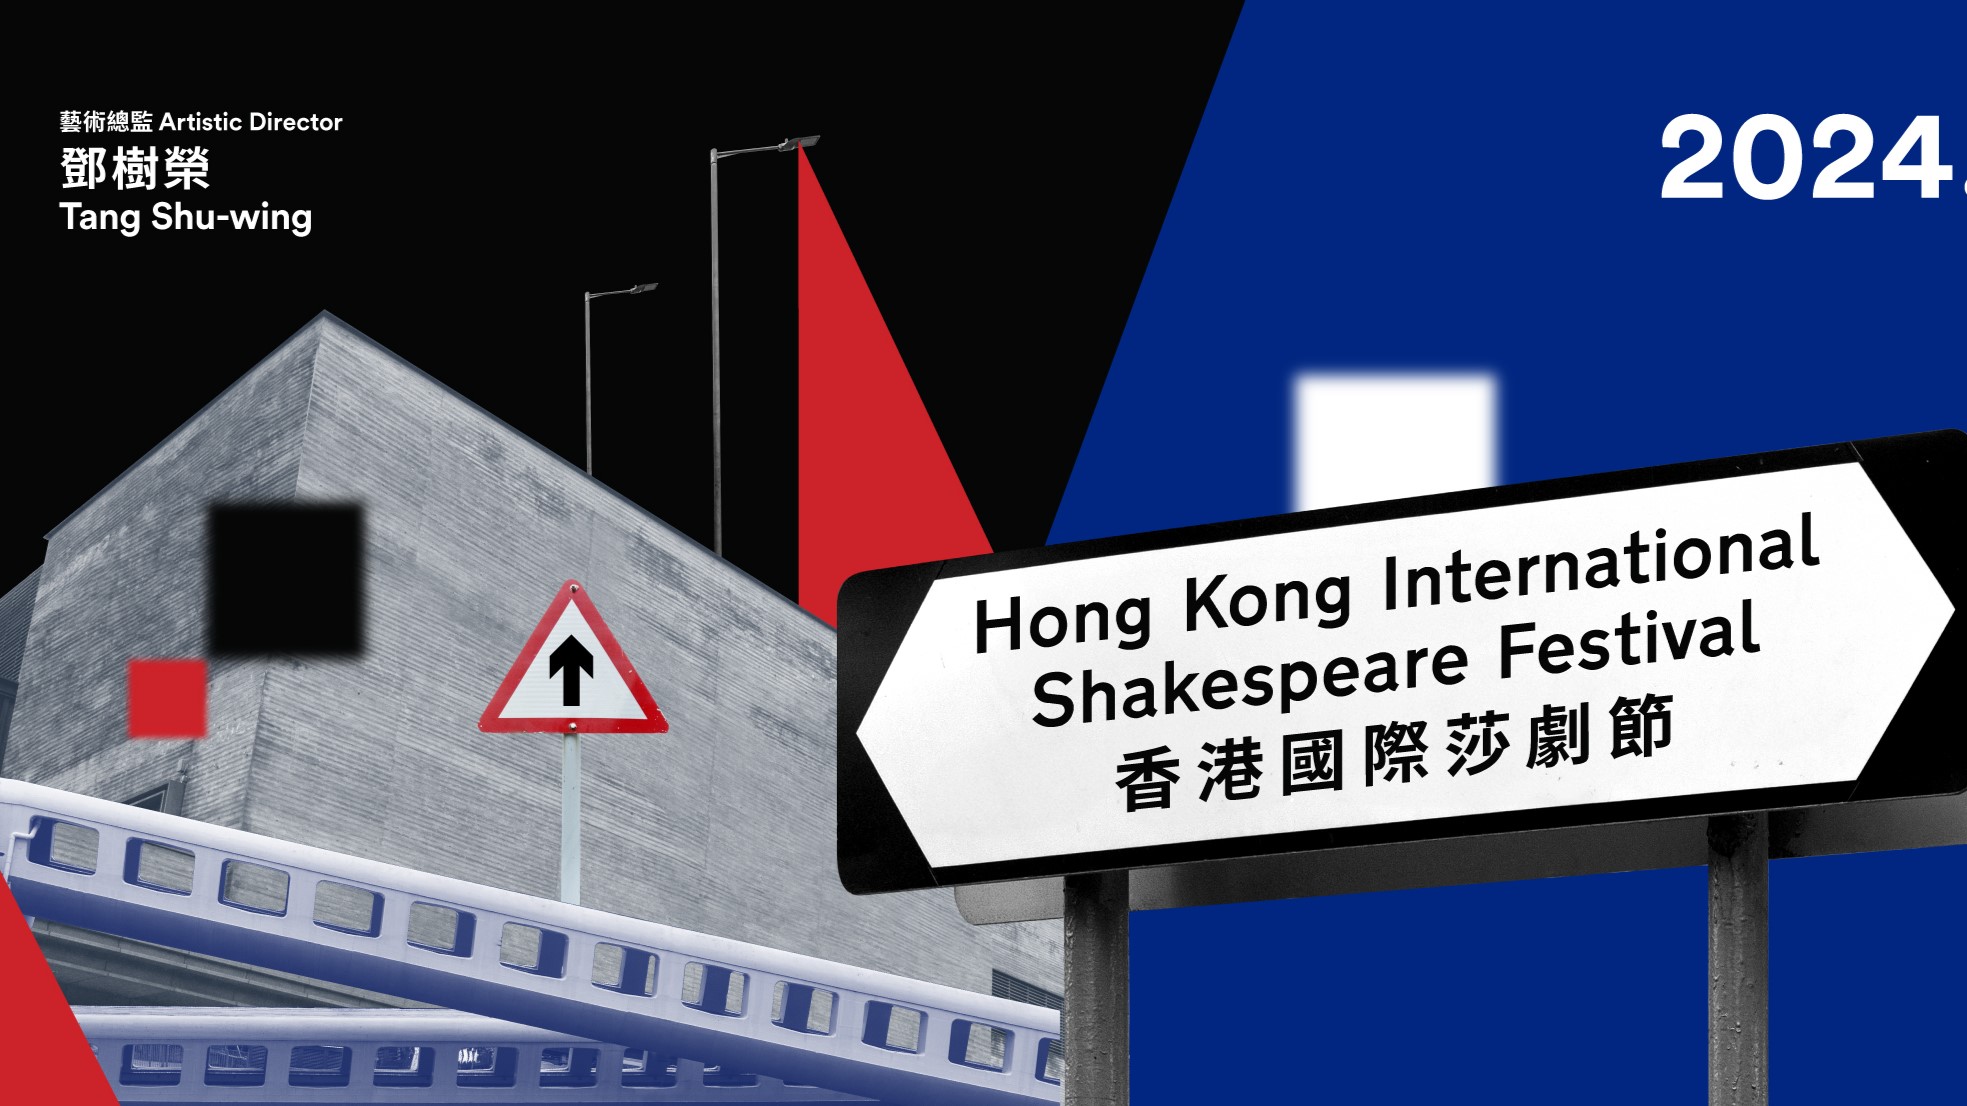 【文藝】香港國際莎劇節 融合中西文化的莎翁盛宴